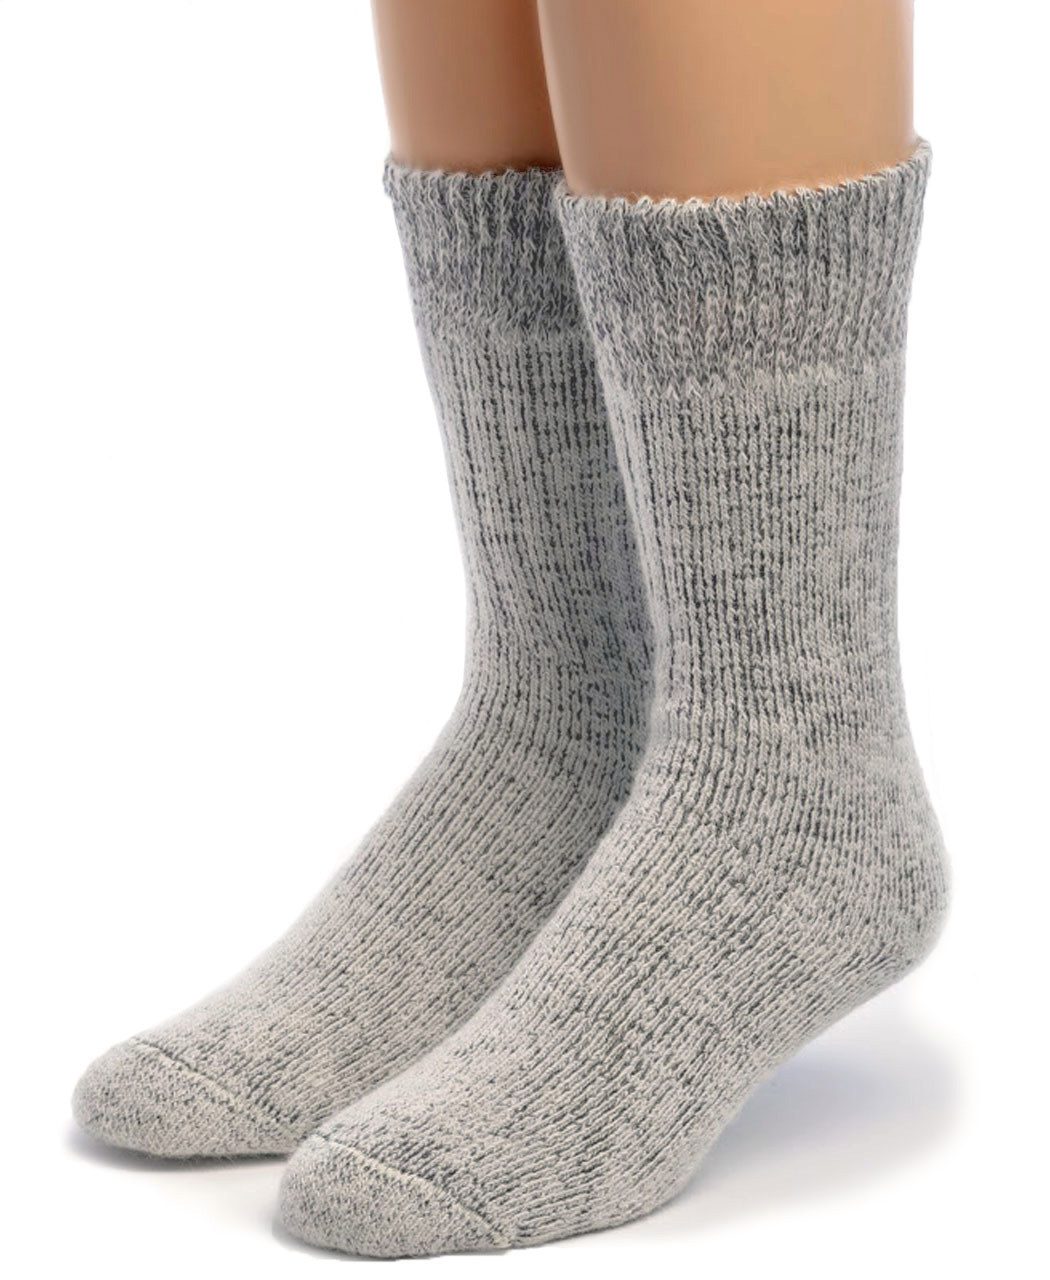 Heat Holders Home Men's Ankle Socks (Navy) 